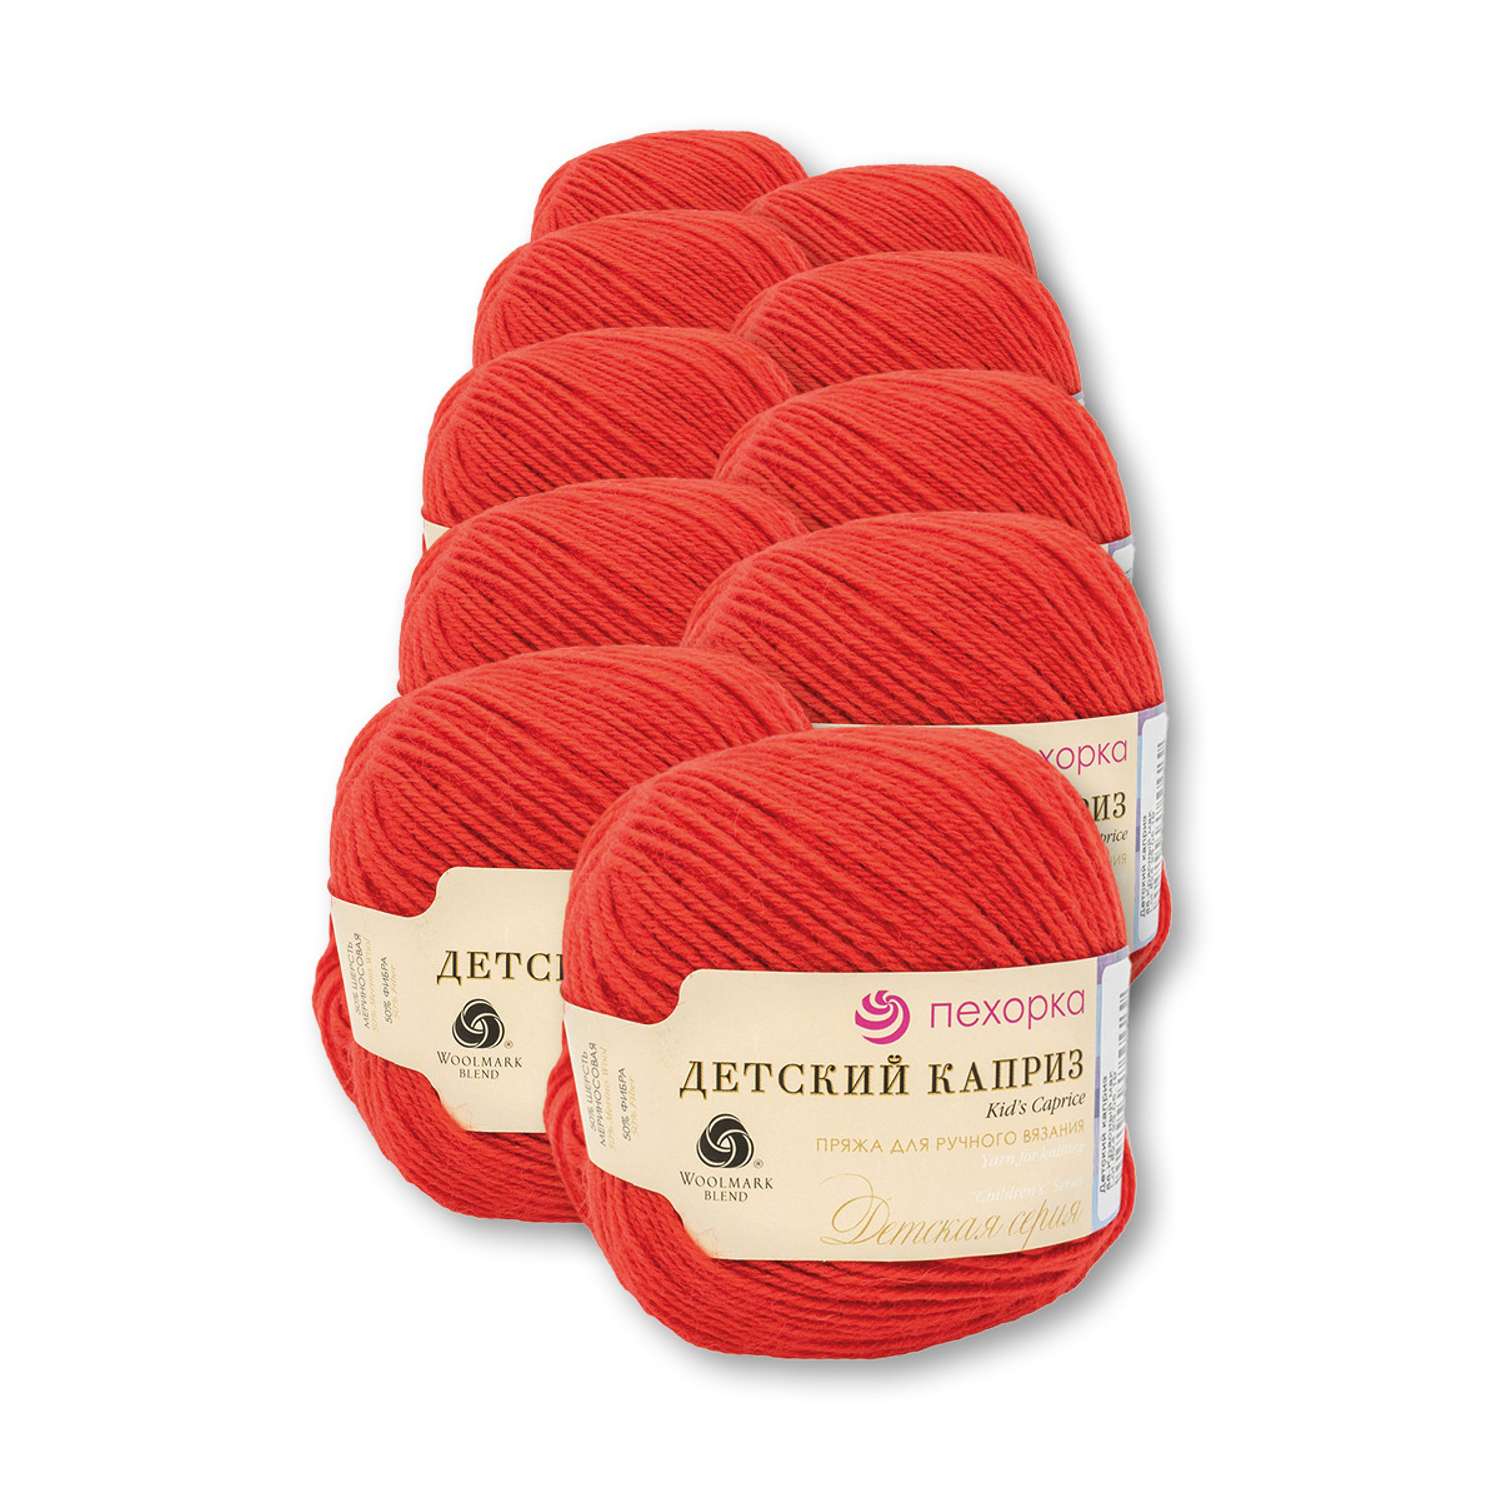 Пряжа для вязания Пехорка детский каприз 50 гр 225 м мериносовая шерсть фибра согревающая 88 Красный мак 10 мотков - фото 2